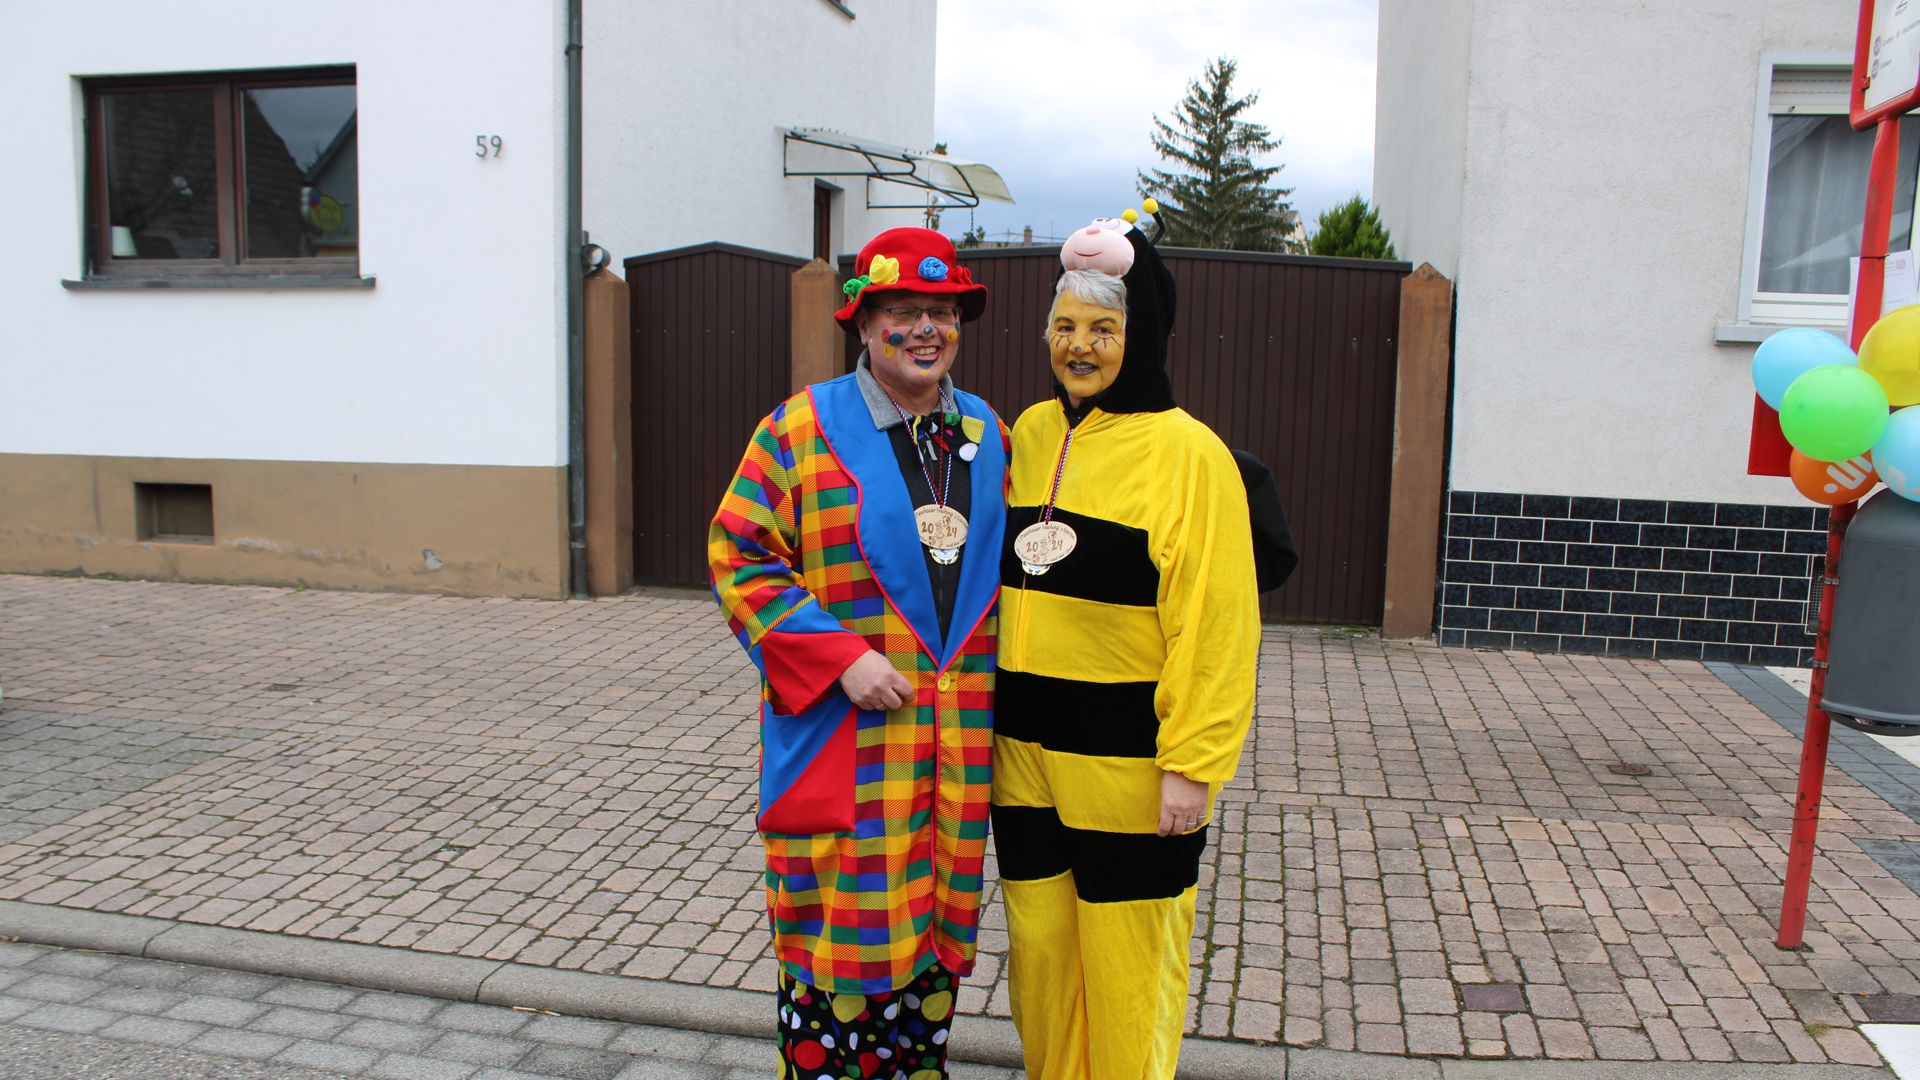 Zwei Menschen als Clown und Biene verkleidet